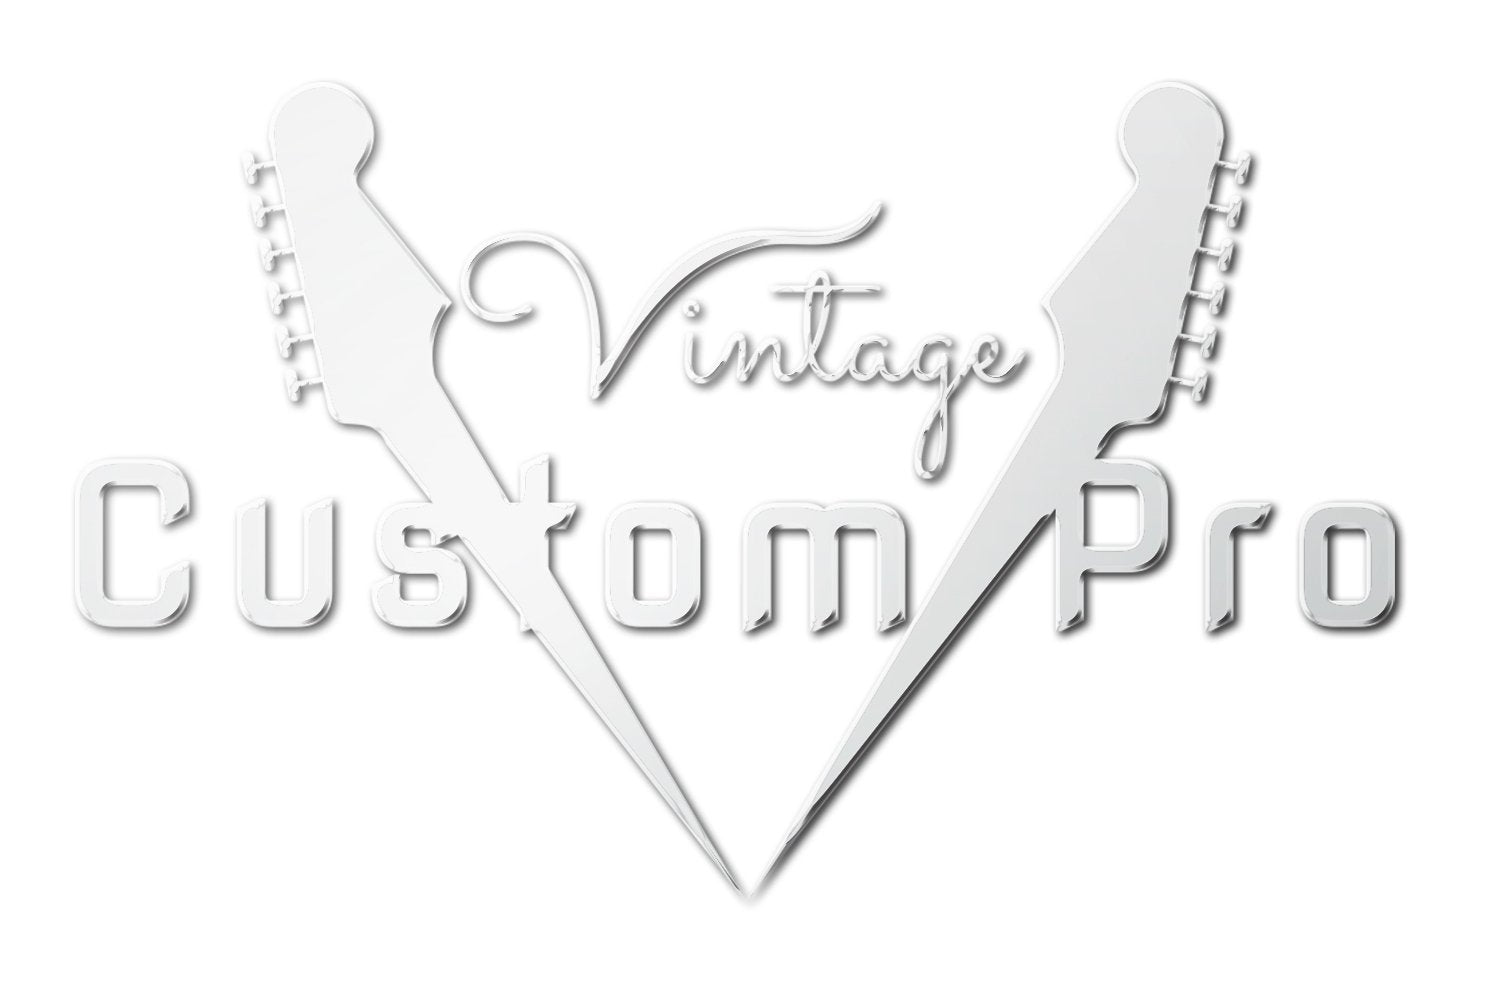 Vintage* VVB4SB Bass Guitar, Bass Guitar for sale at Richards Guitars.